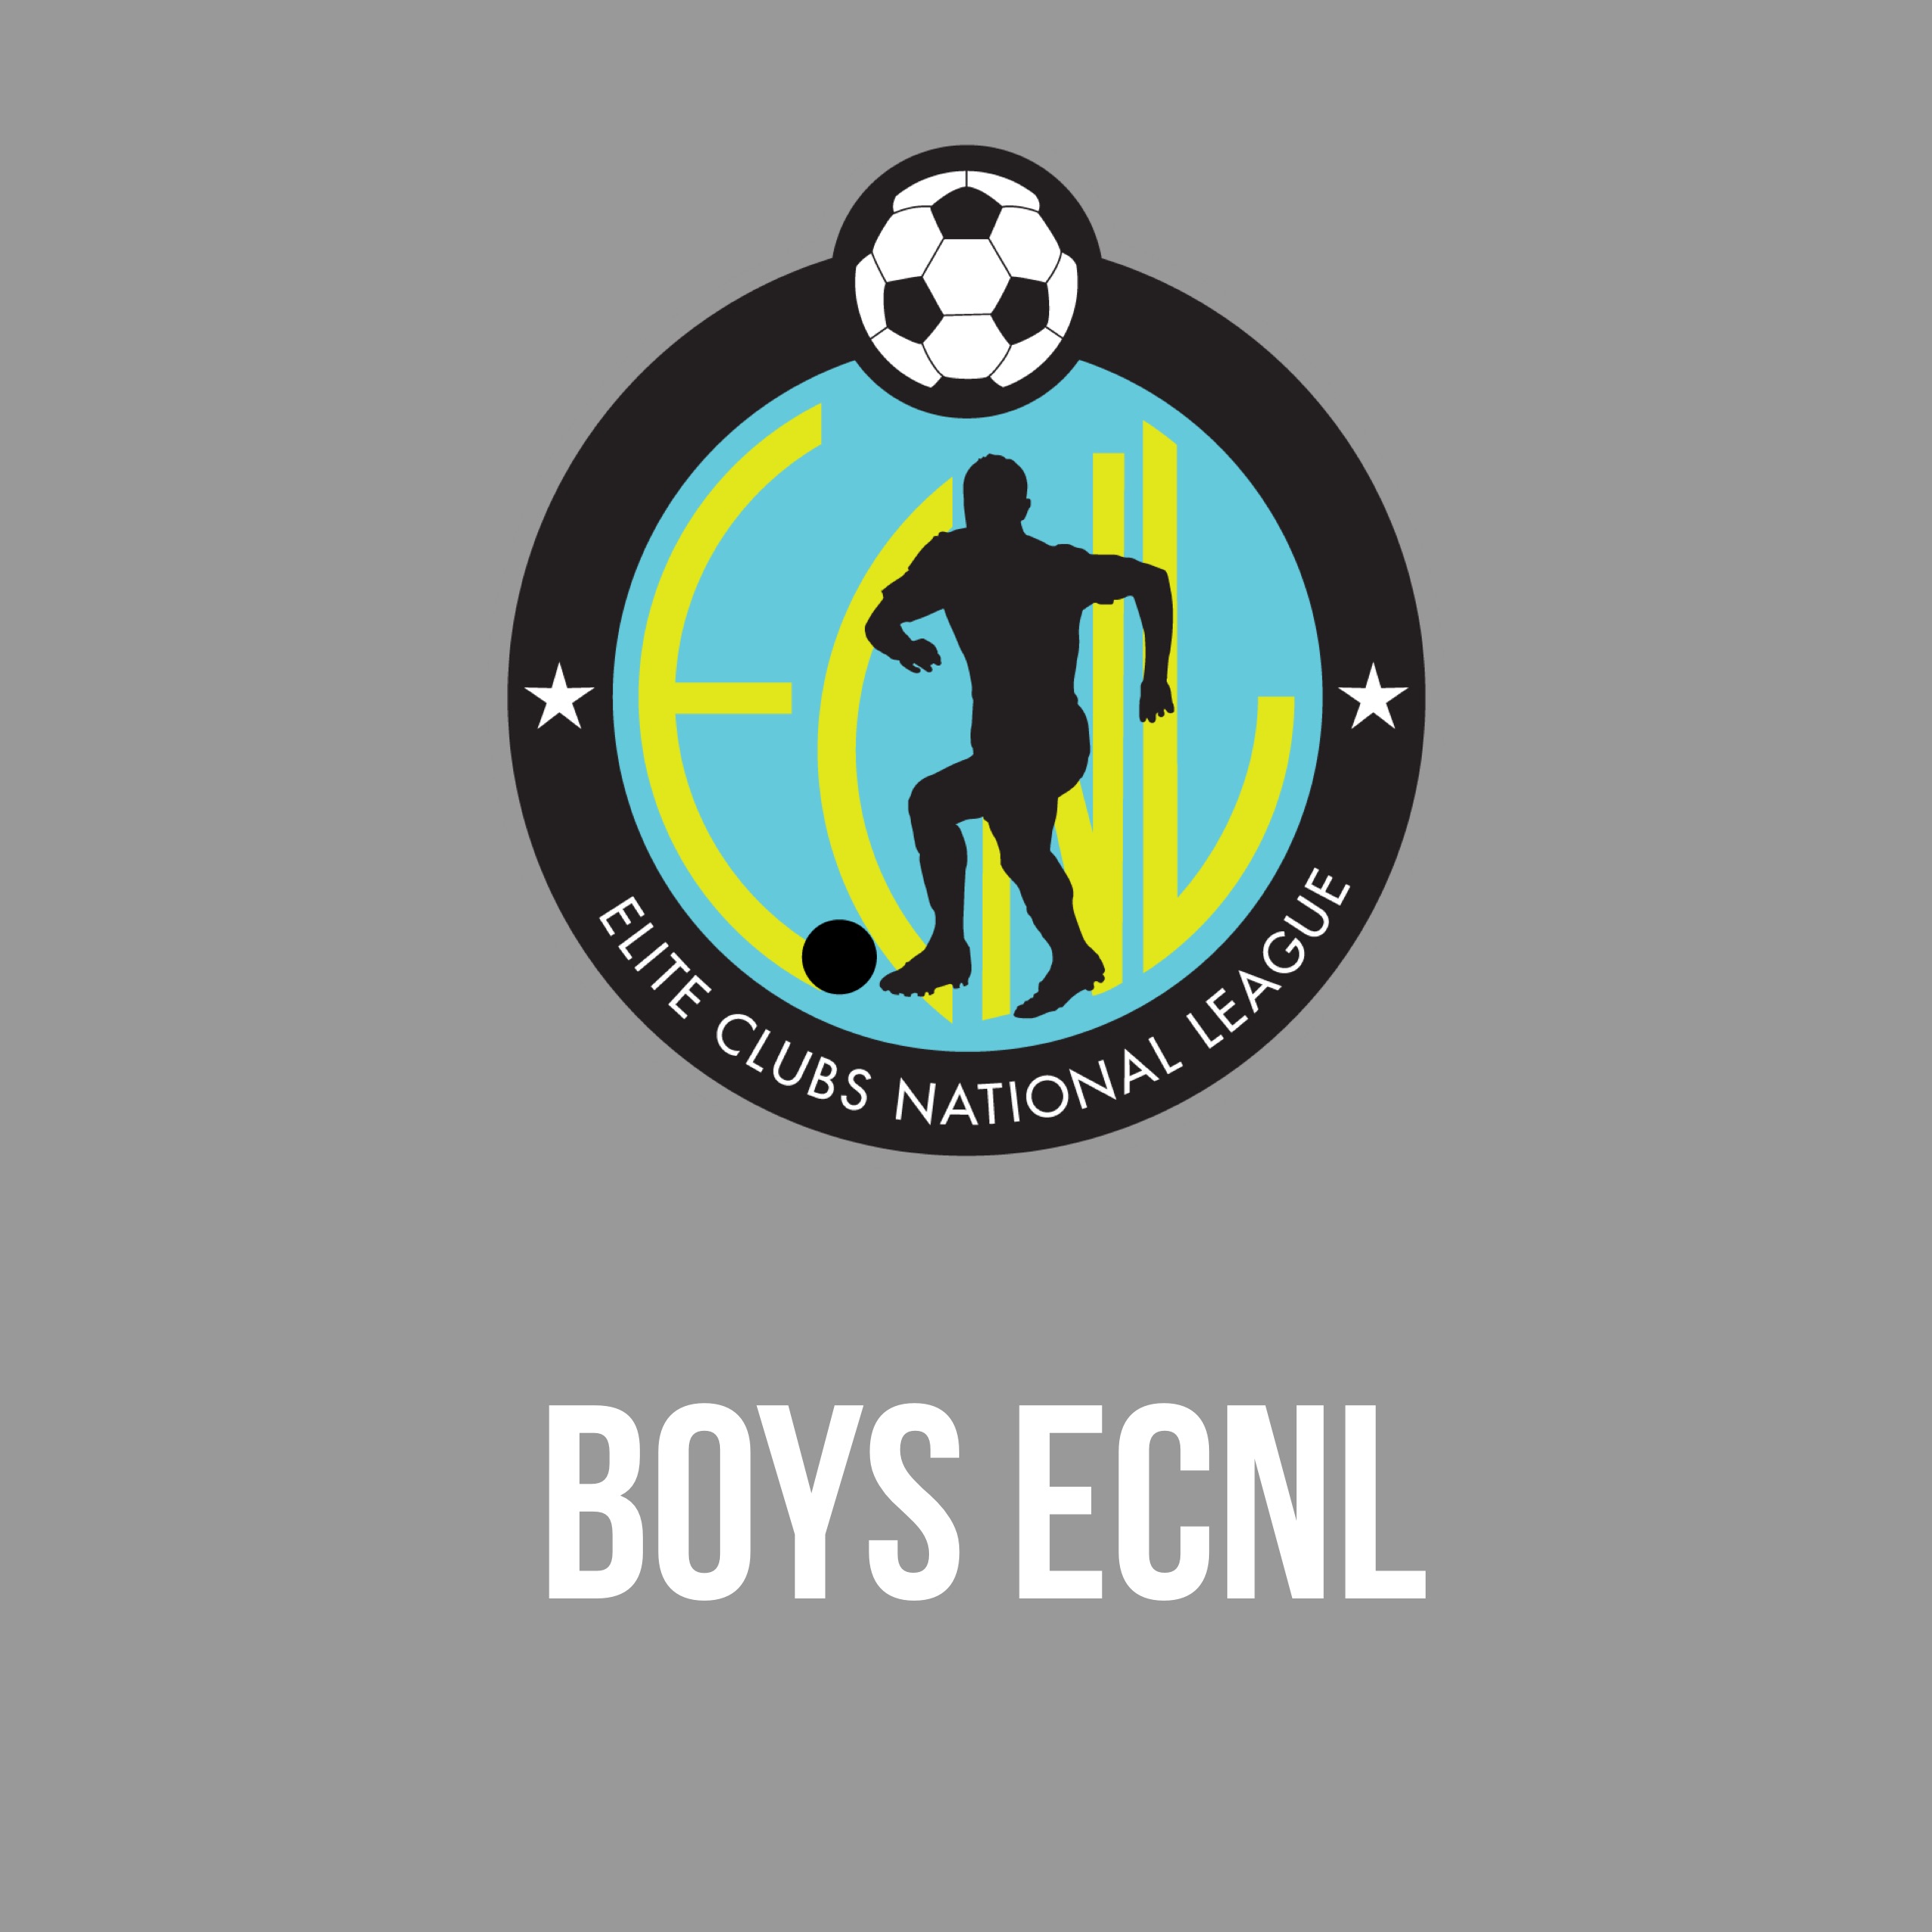 Boys ECNL